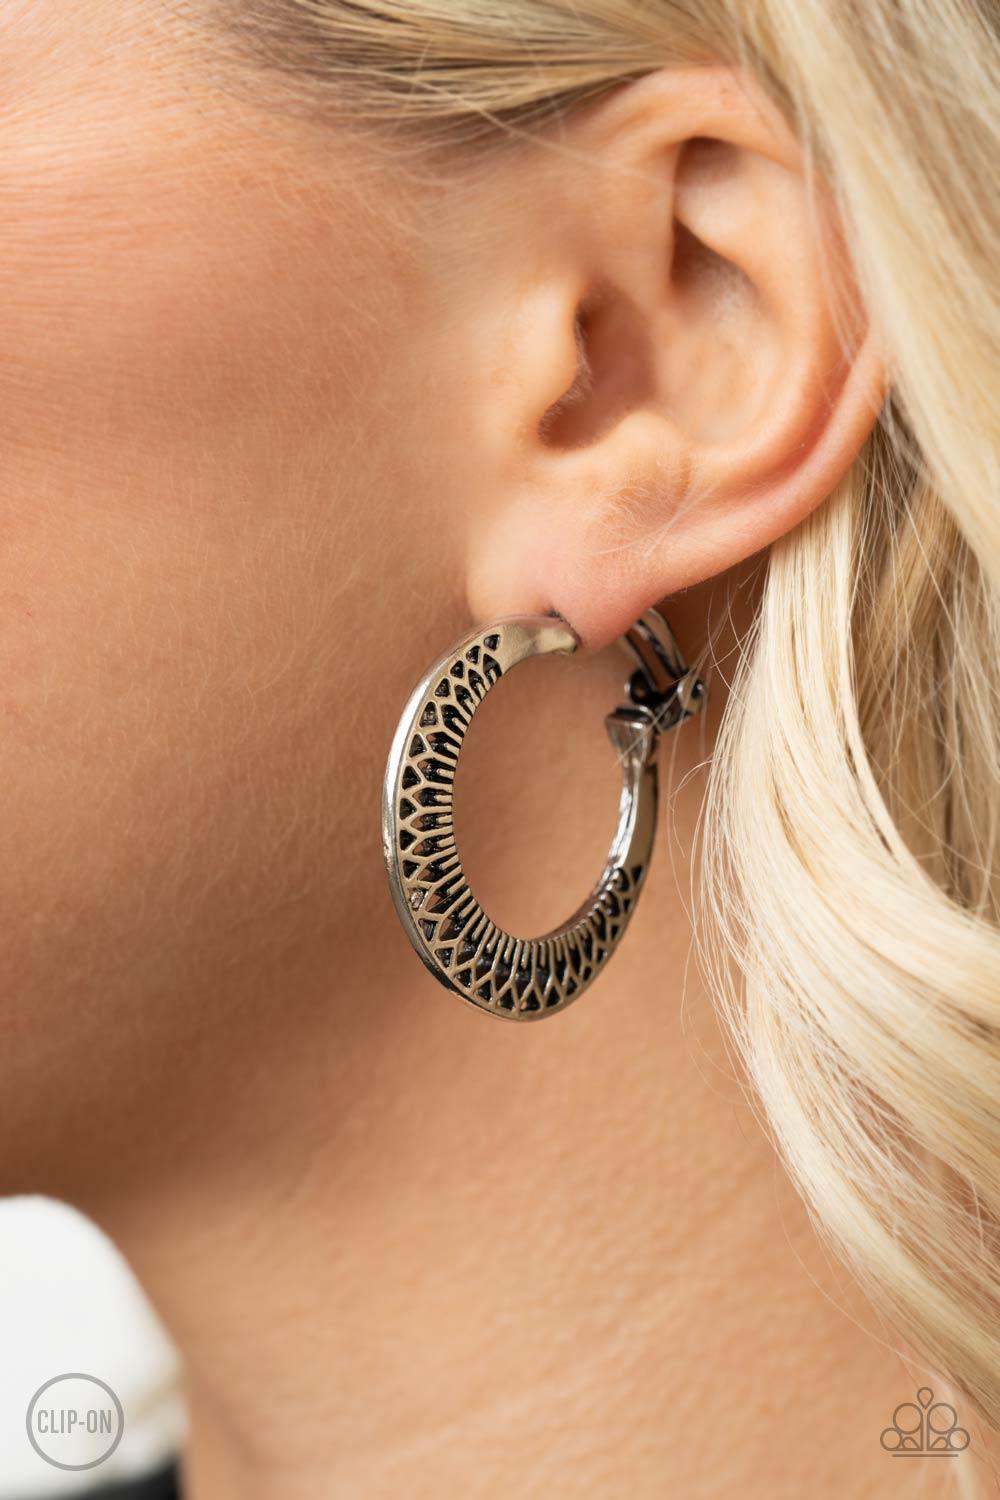 Moon Child Charisma Silver Earrings - Jewelry by Bretta